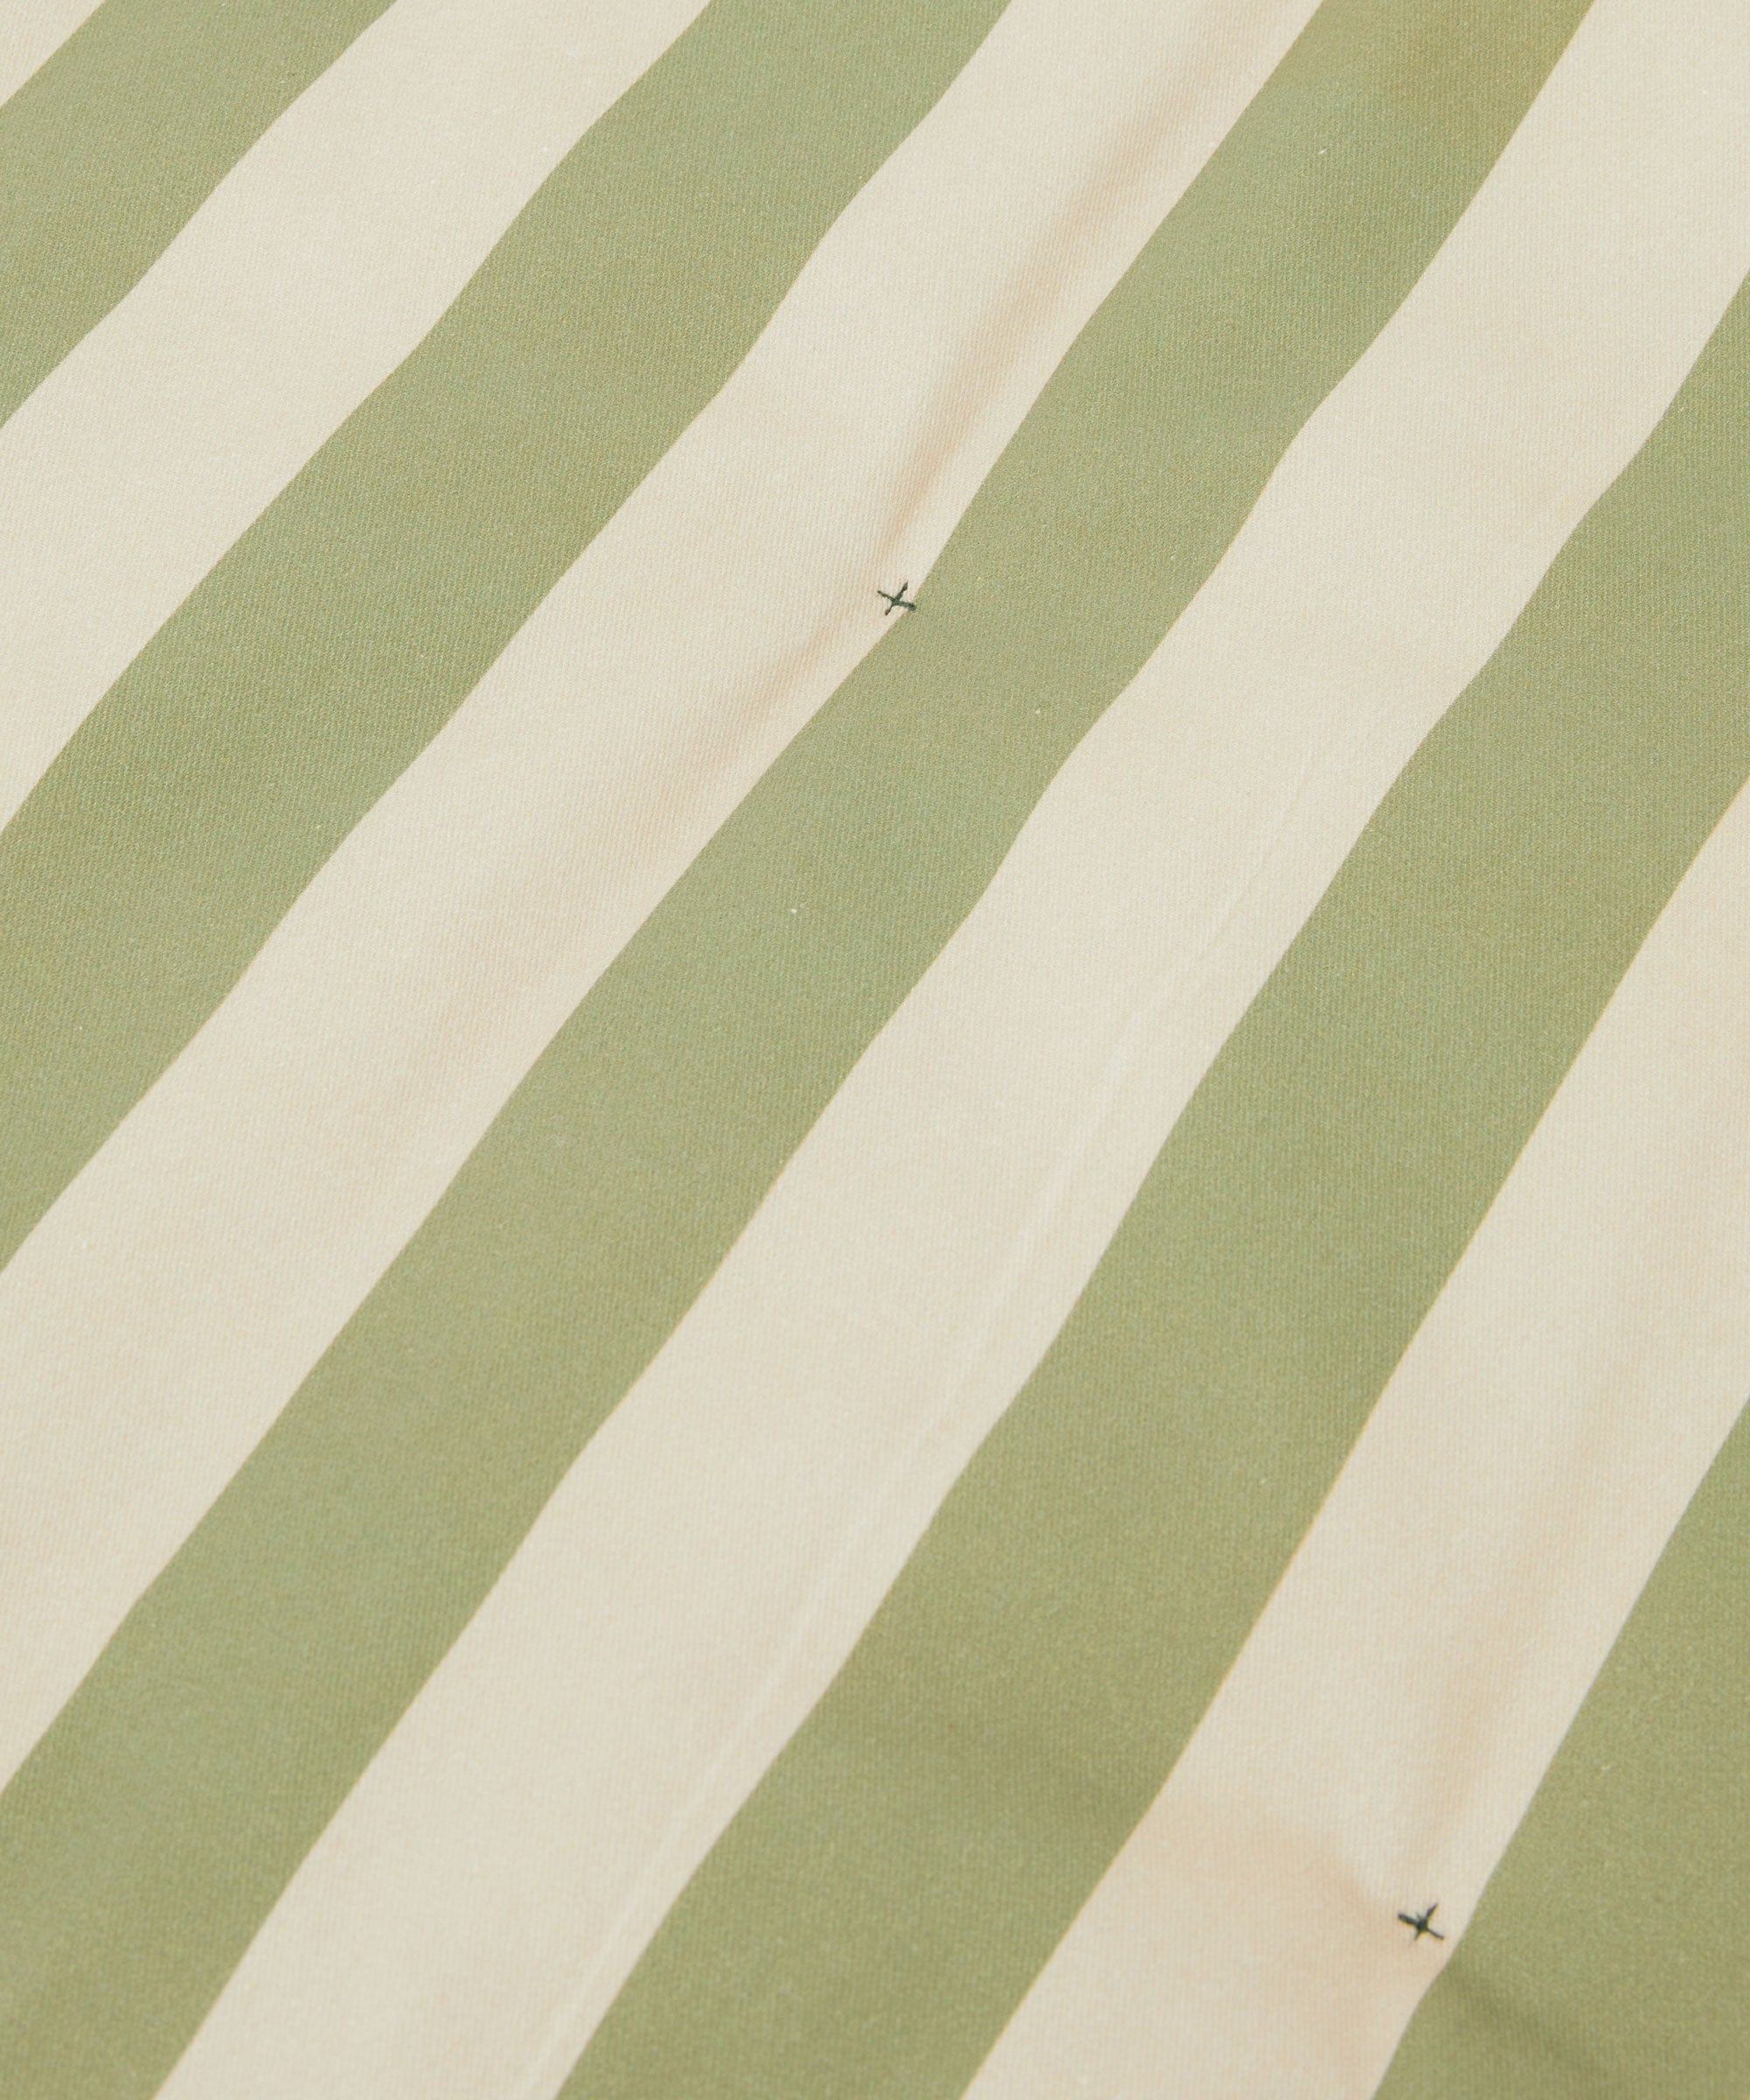 Striped Play Mat – Green